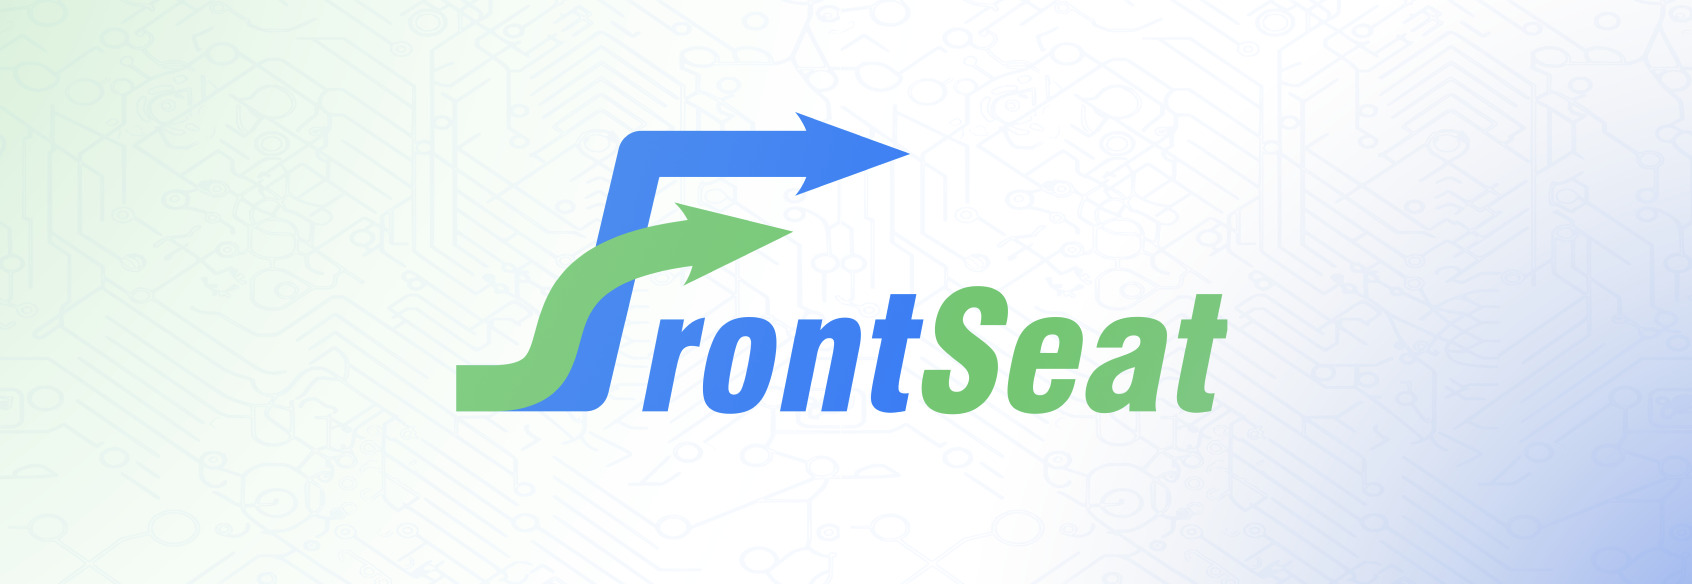 FrontSeat newsletter header